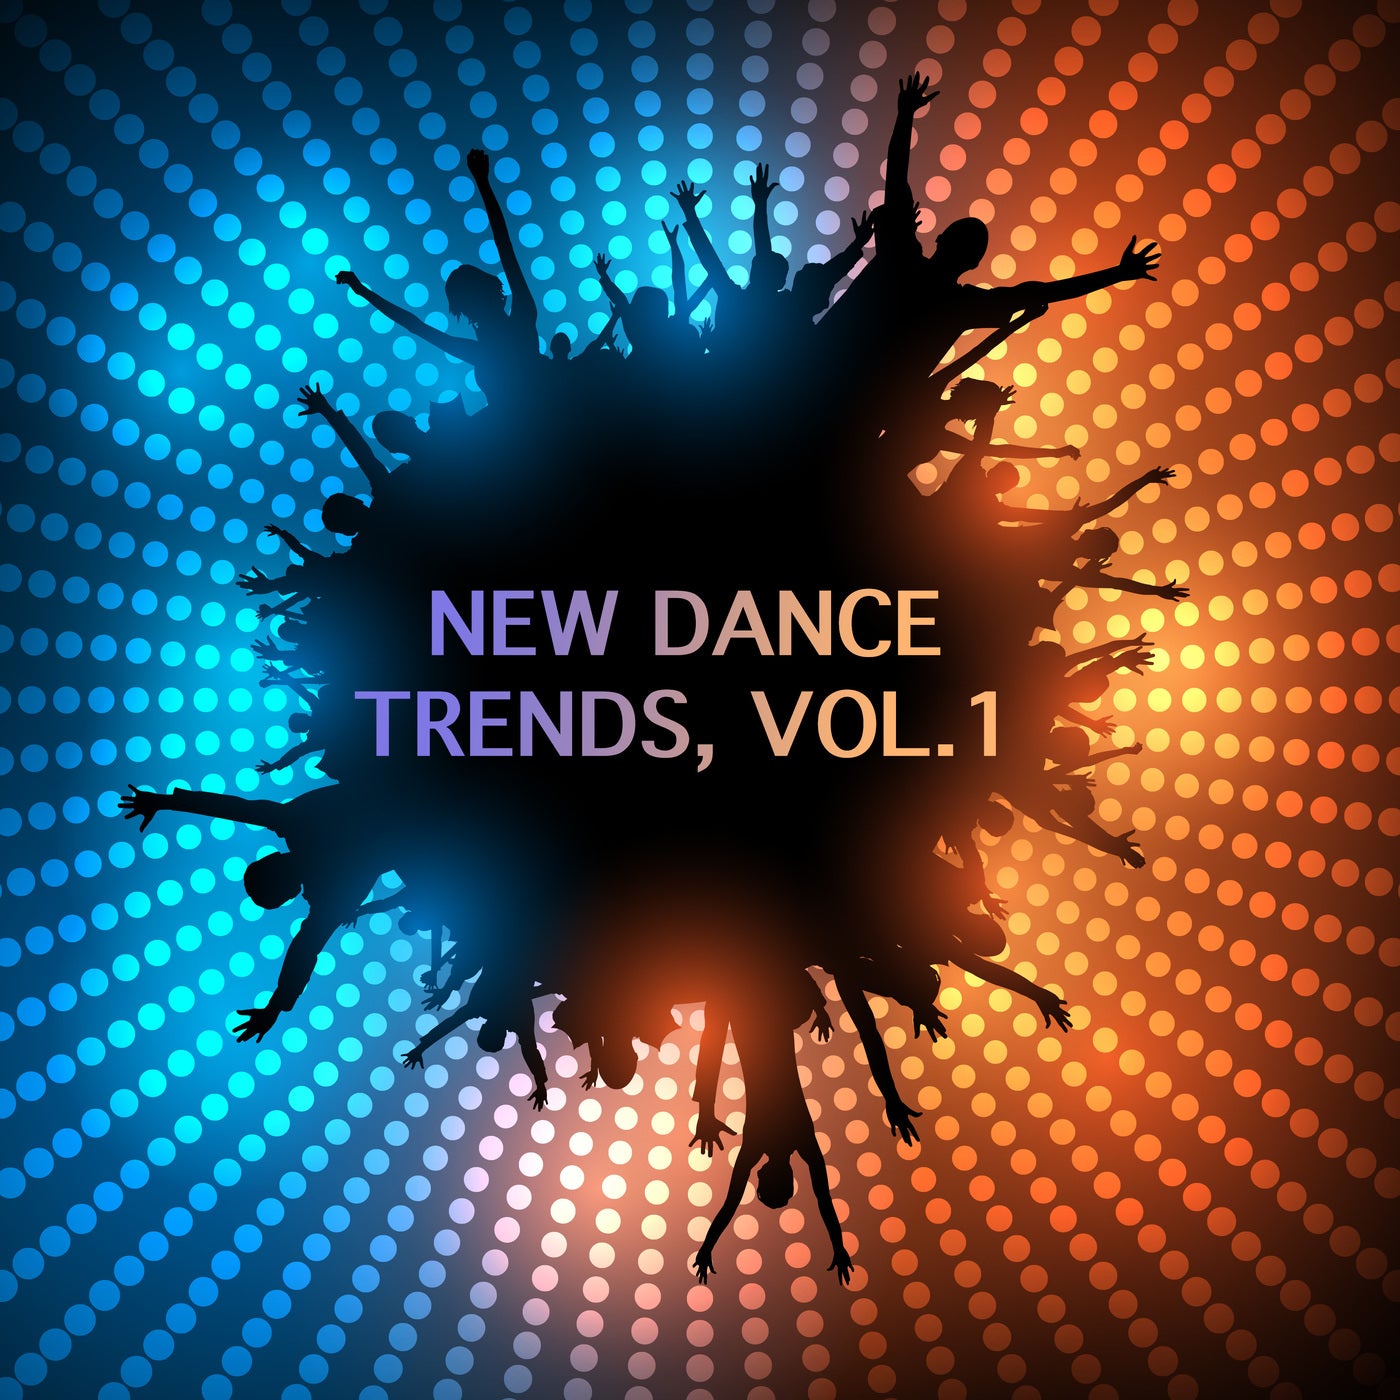 New Dance Trends, Vol. 1